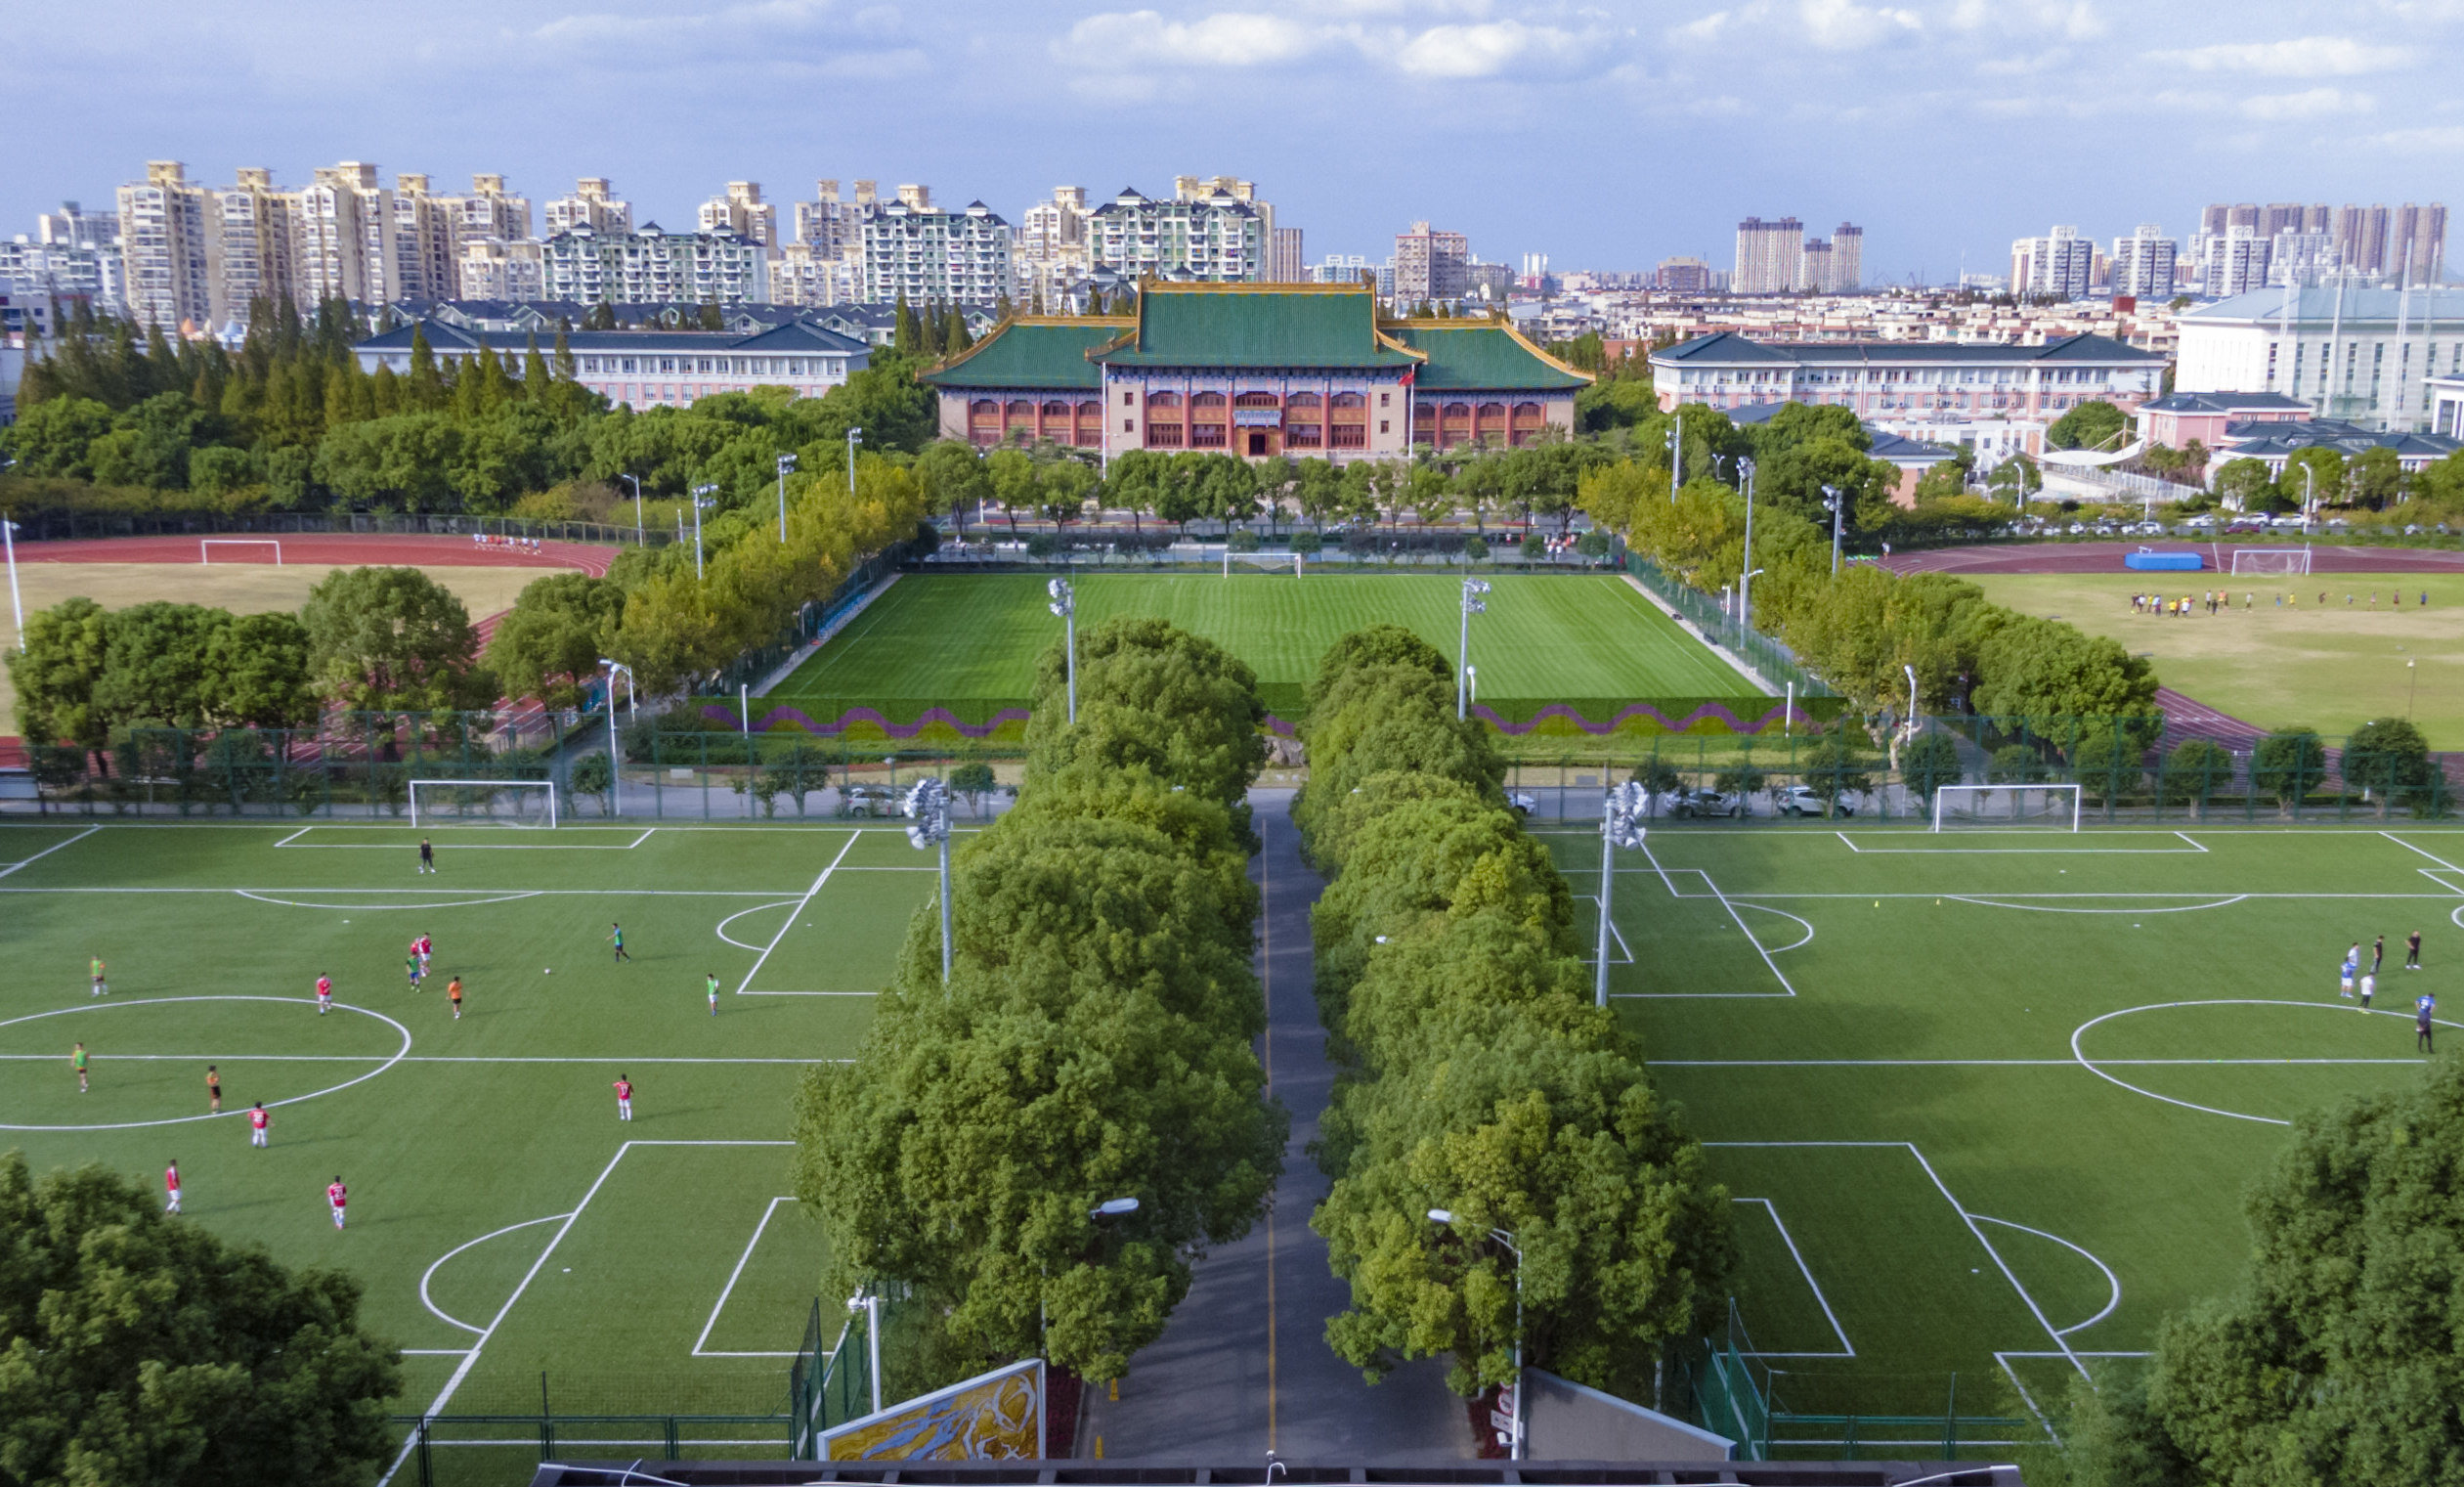 上海体育大学照片图片